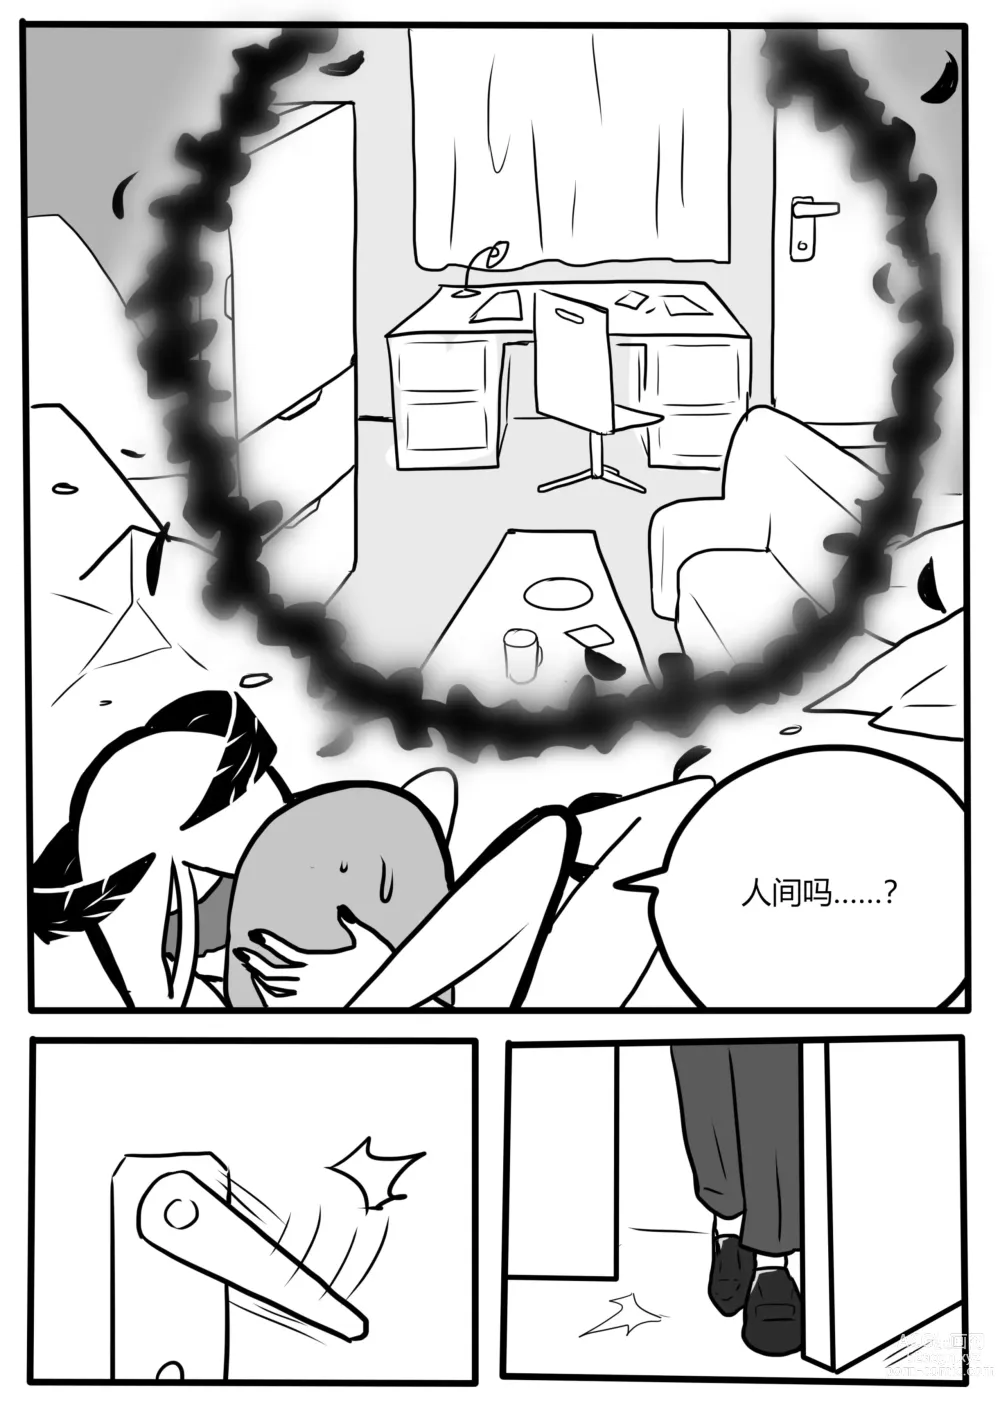 Page 18 of manga Makima tk manga